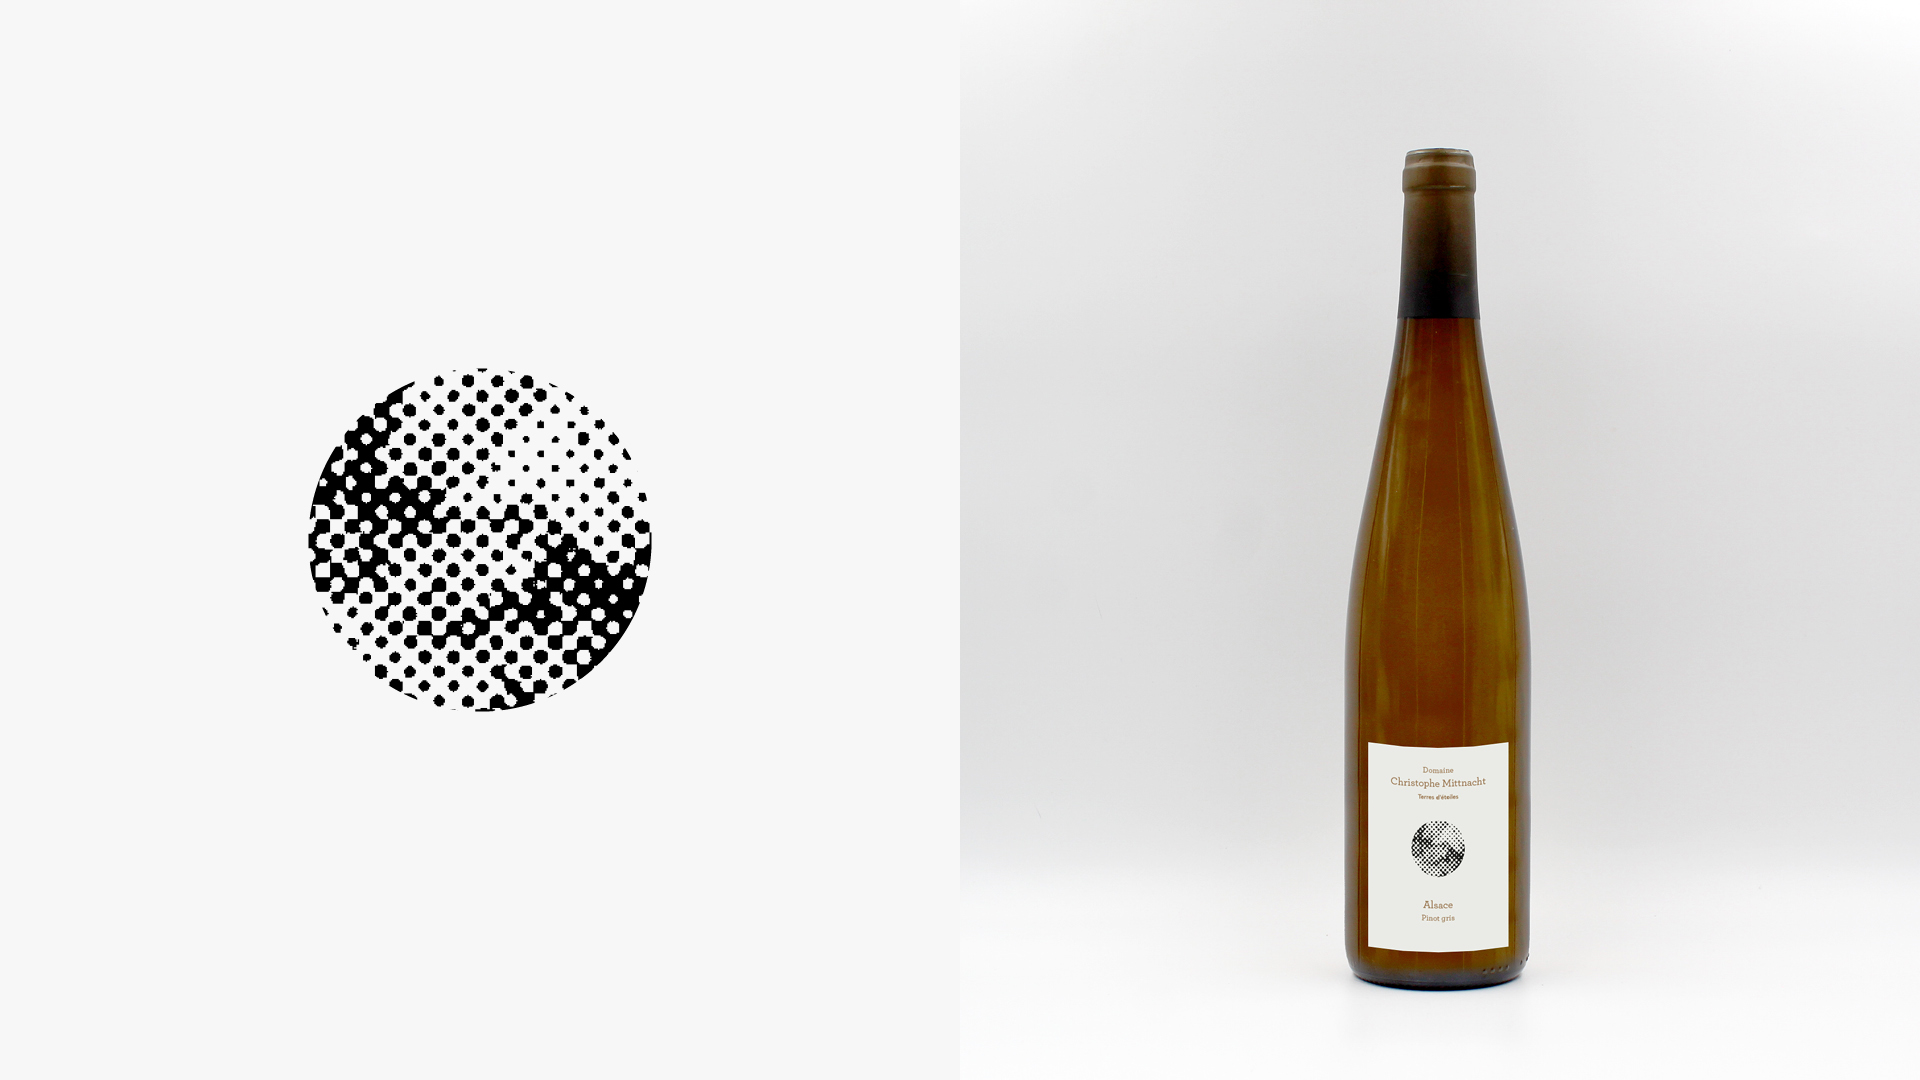 Étiquette et bouteille Terres d’étoiles — Alsace Pinot gris